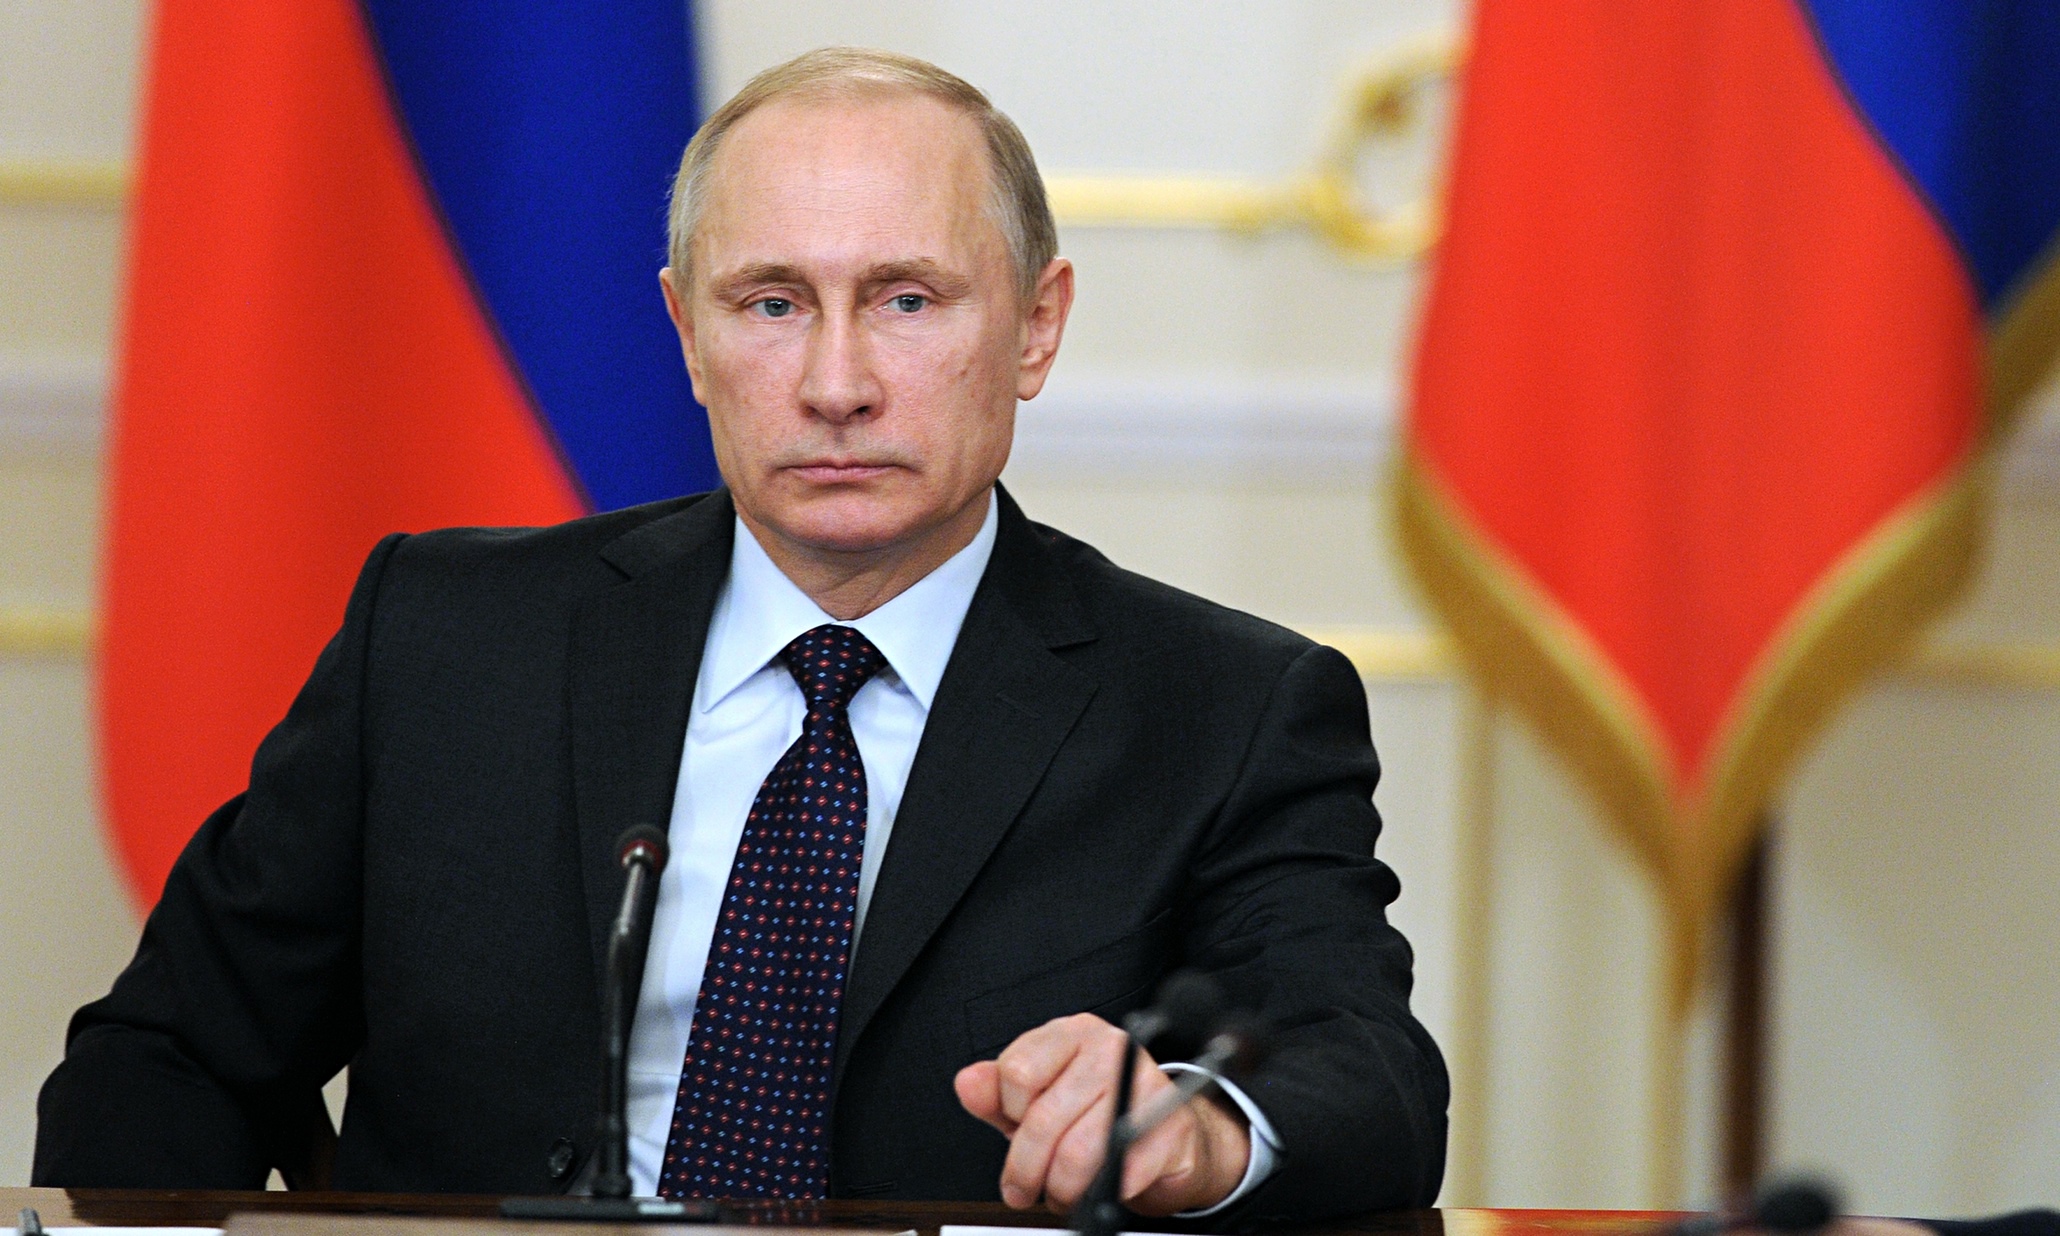 Β.Πούτιν: Πήρε δώρο ένα «παιχνίδι-τέρας» σε σύνοδο κορυφής (βίντεο)